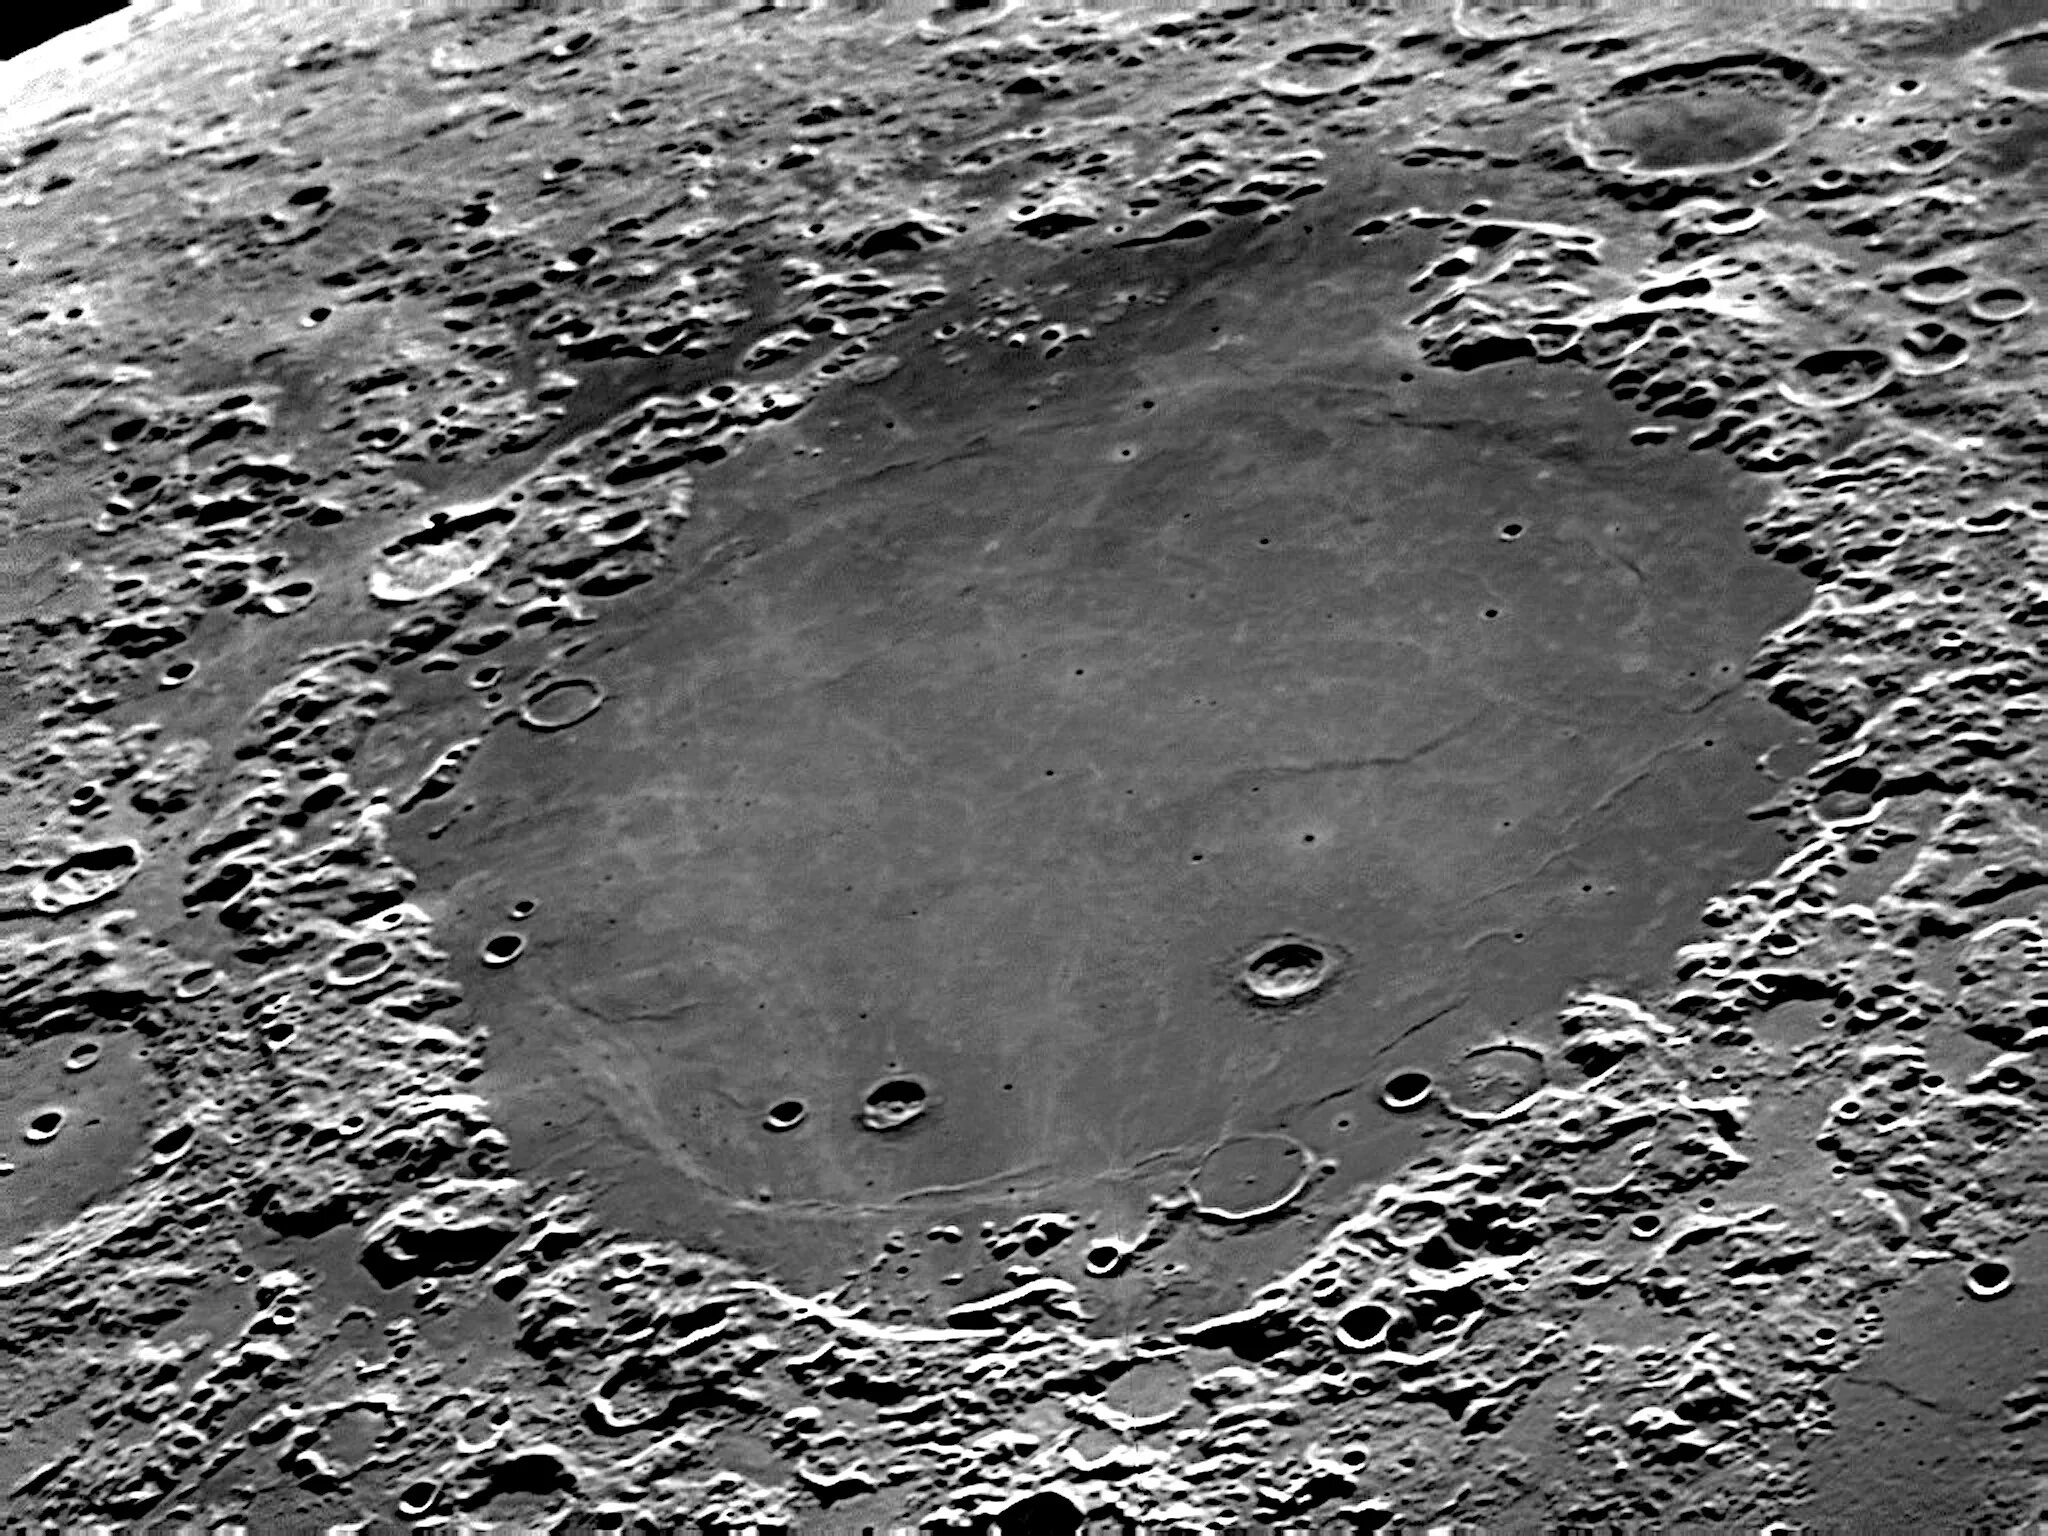 Луна лунные моря. Кратер Луны море кризисов. Кратер Коперник. Кратер Ван де Грааф на Луне. Кратер Архимед.